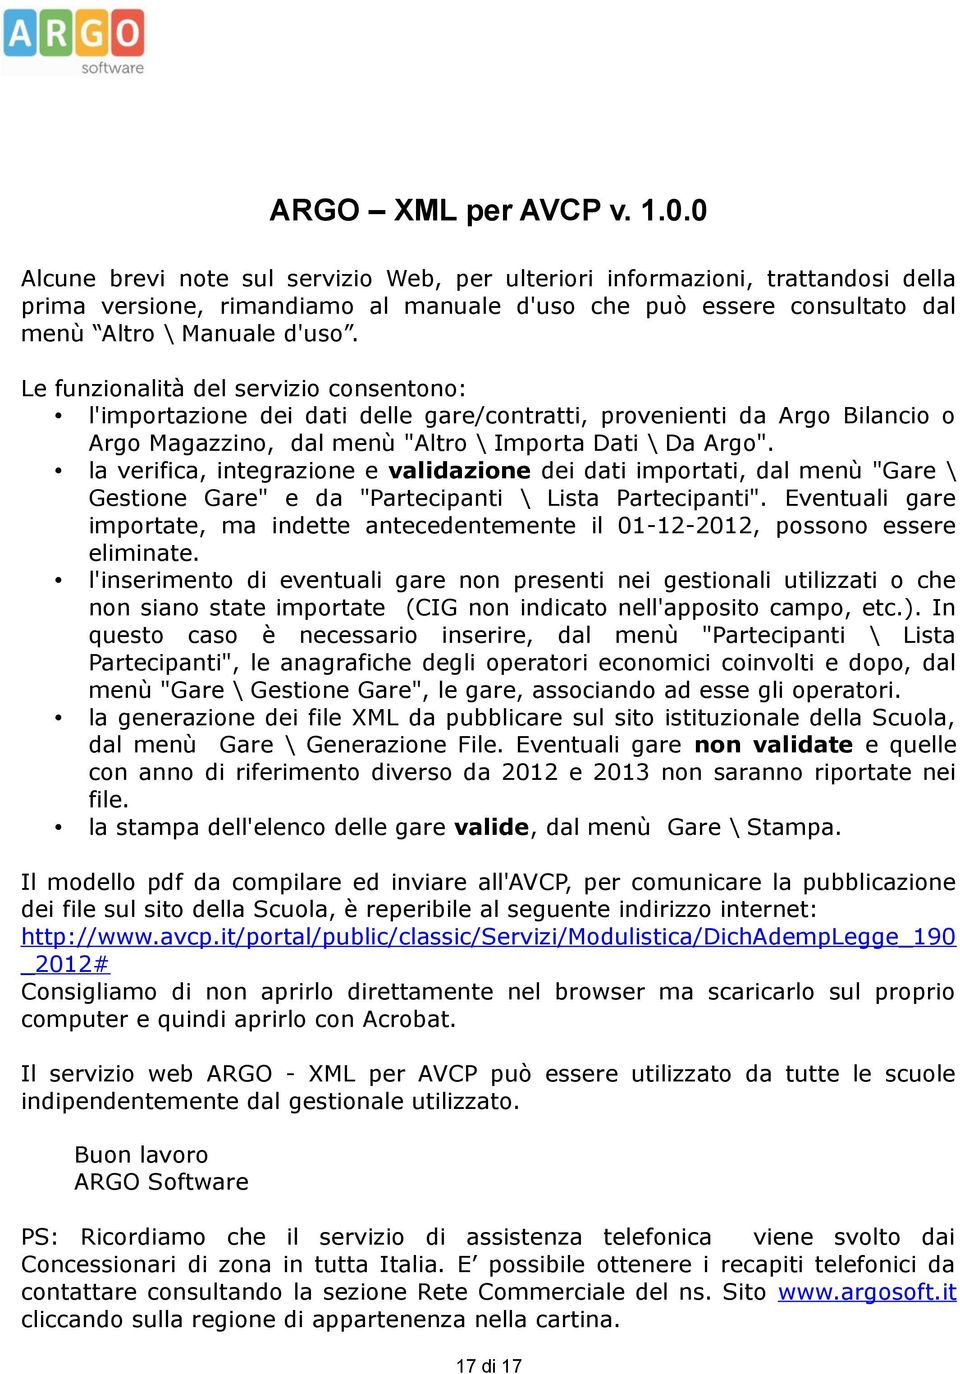 Le funzionalità del servizio consentono: l'importazione dei dati delle gare/contratti, provenienti da Argo Bilancio o Argo Magazzino, dal menù "Altro \ Importa Dati \ Da Argo".